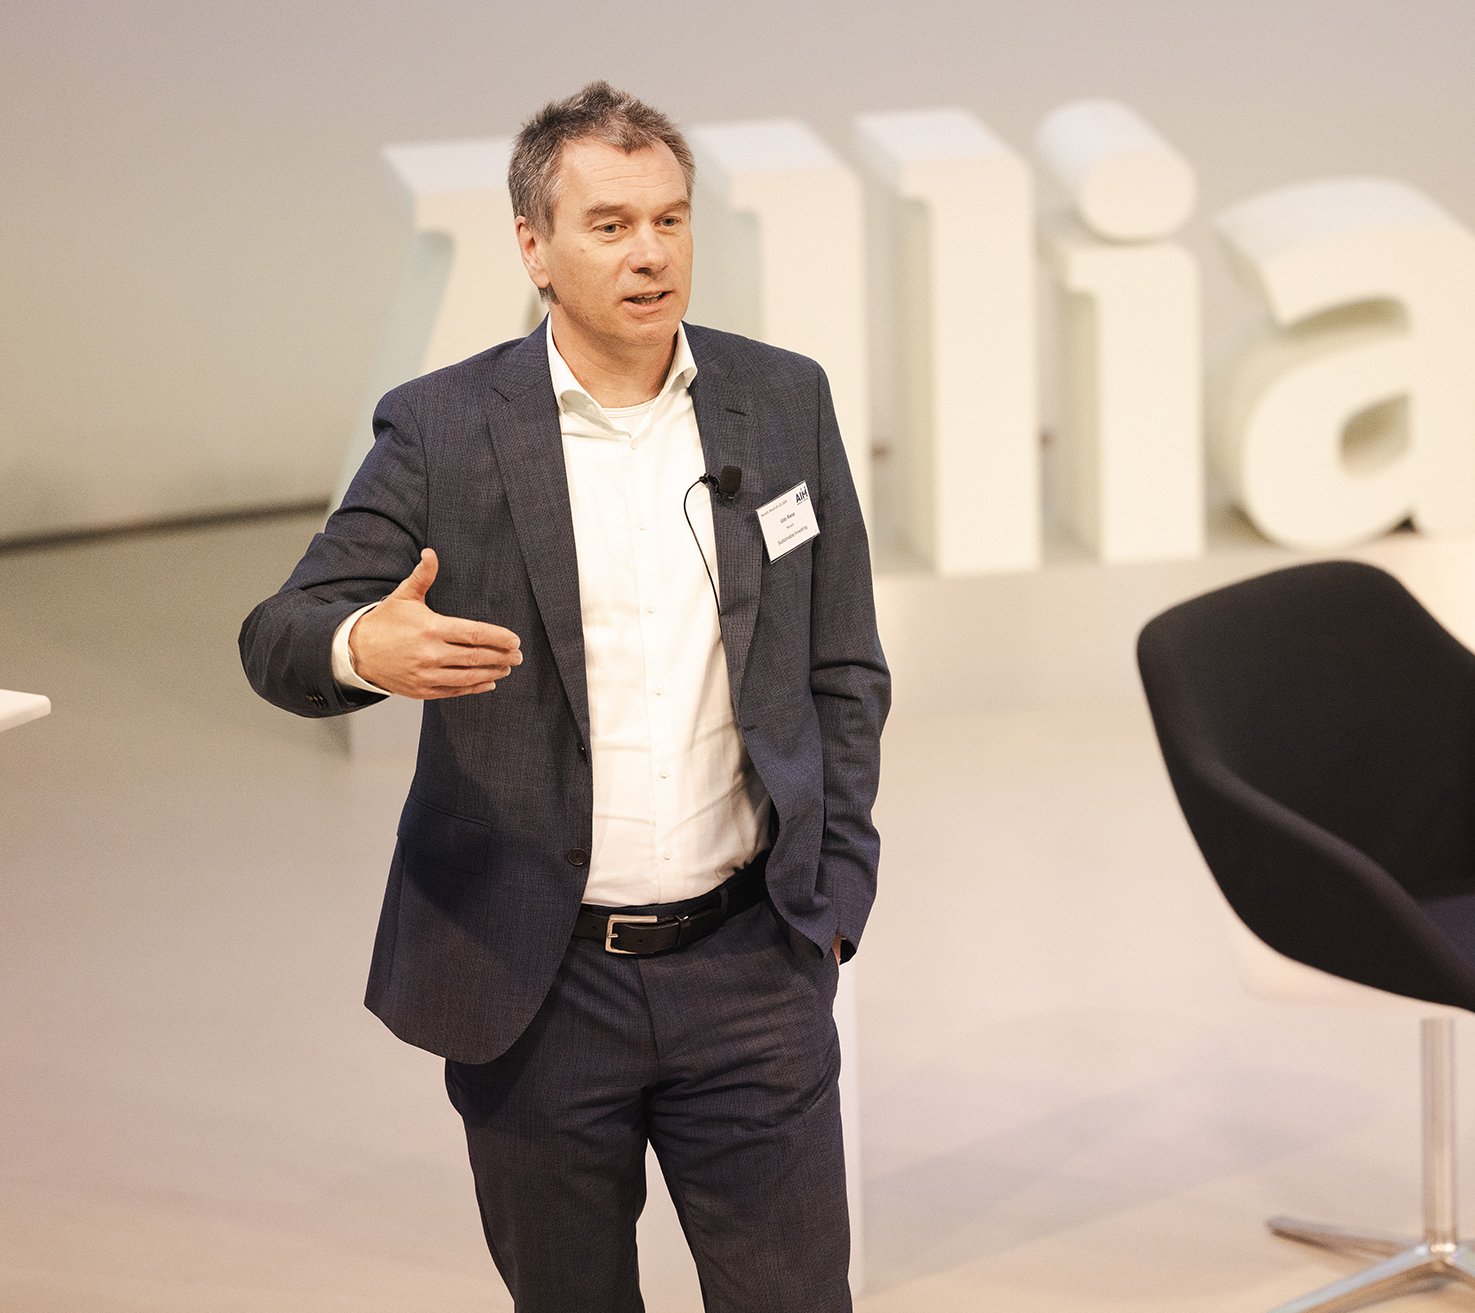 Udo Riese, Leiterin der Abteilung für nachhaltige Anlagen bei Allianz Investment Management